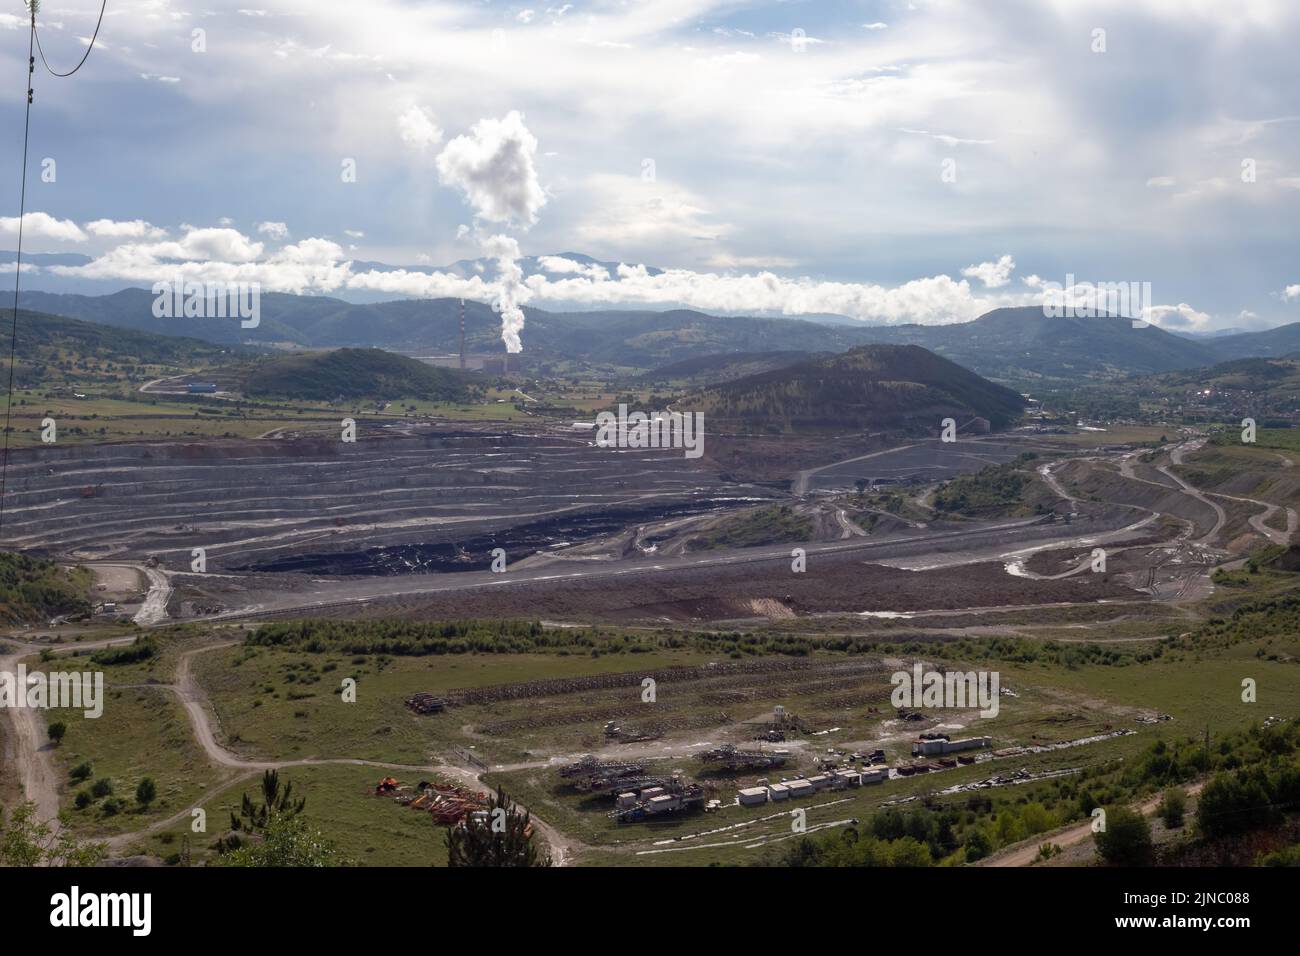 Une usine thermoélectrique la plus bigante 'Pljevlja' près de la ville de Pljevlja au Monténégro, avec de grandes cheminées dans un paysage rural Banque D'Images